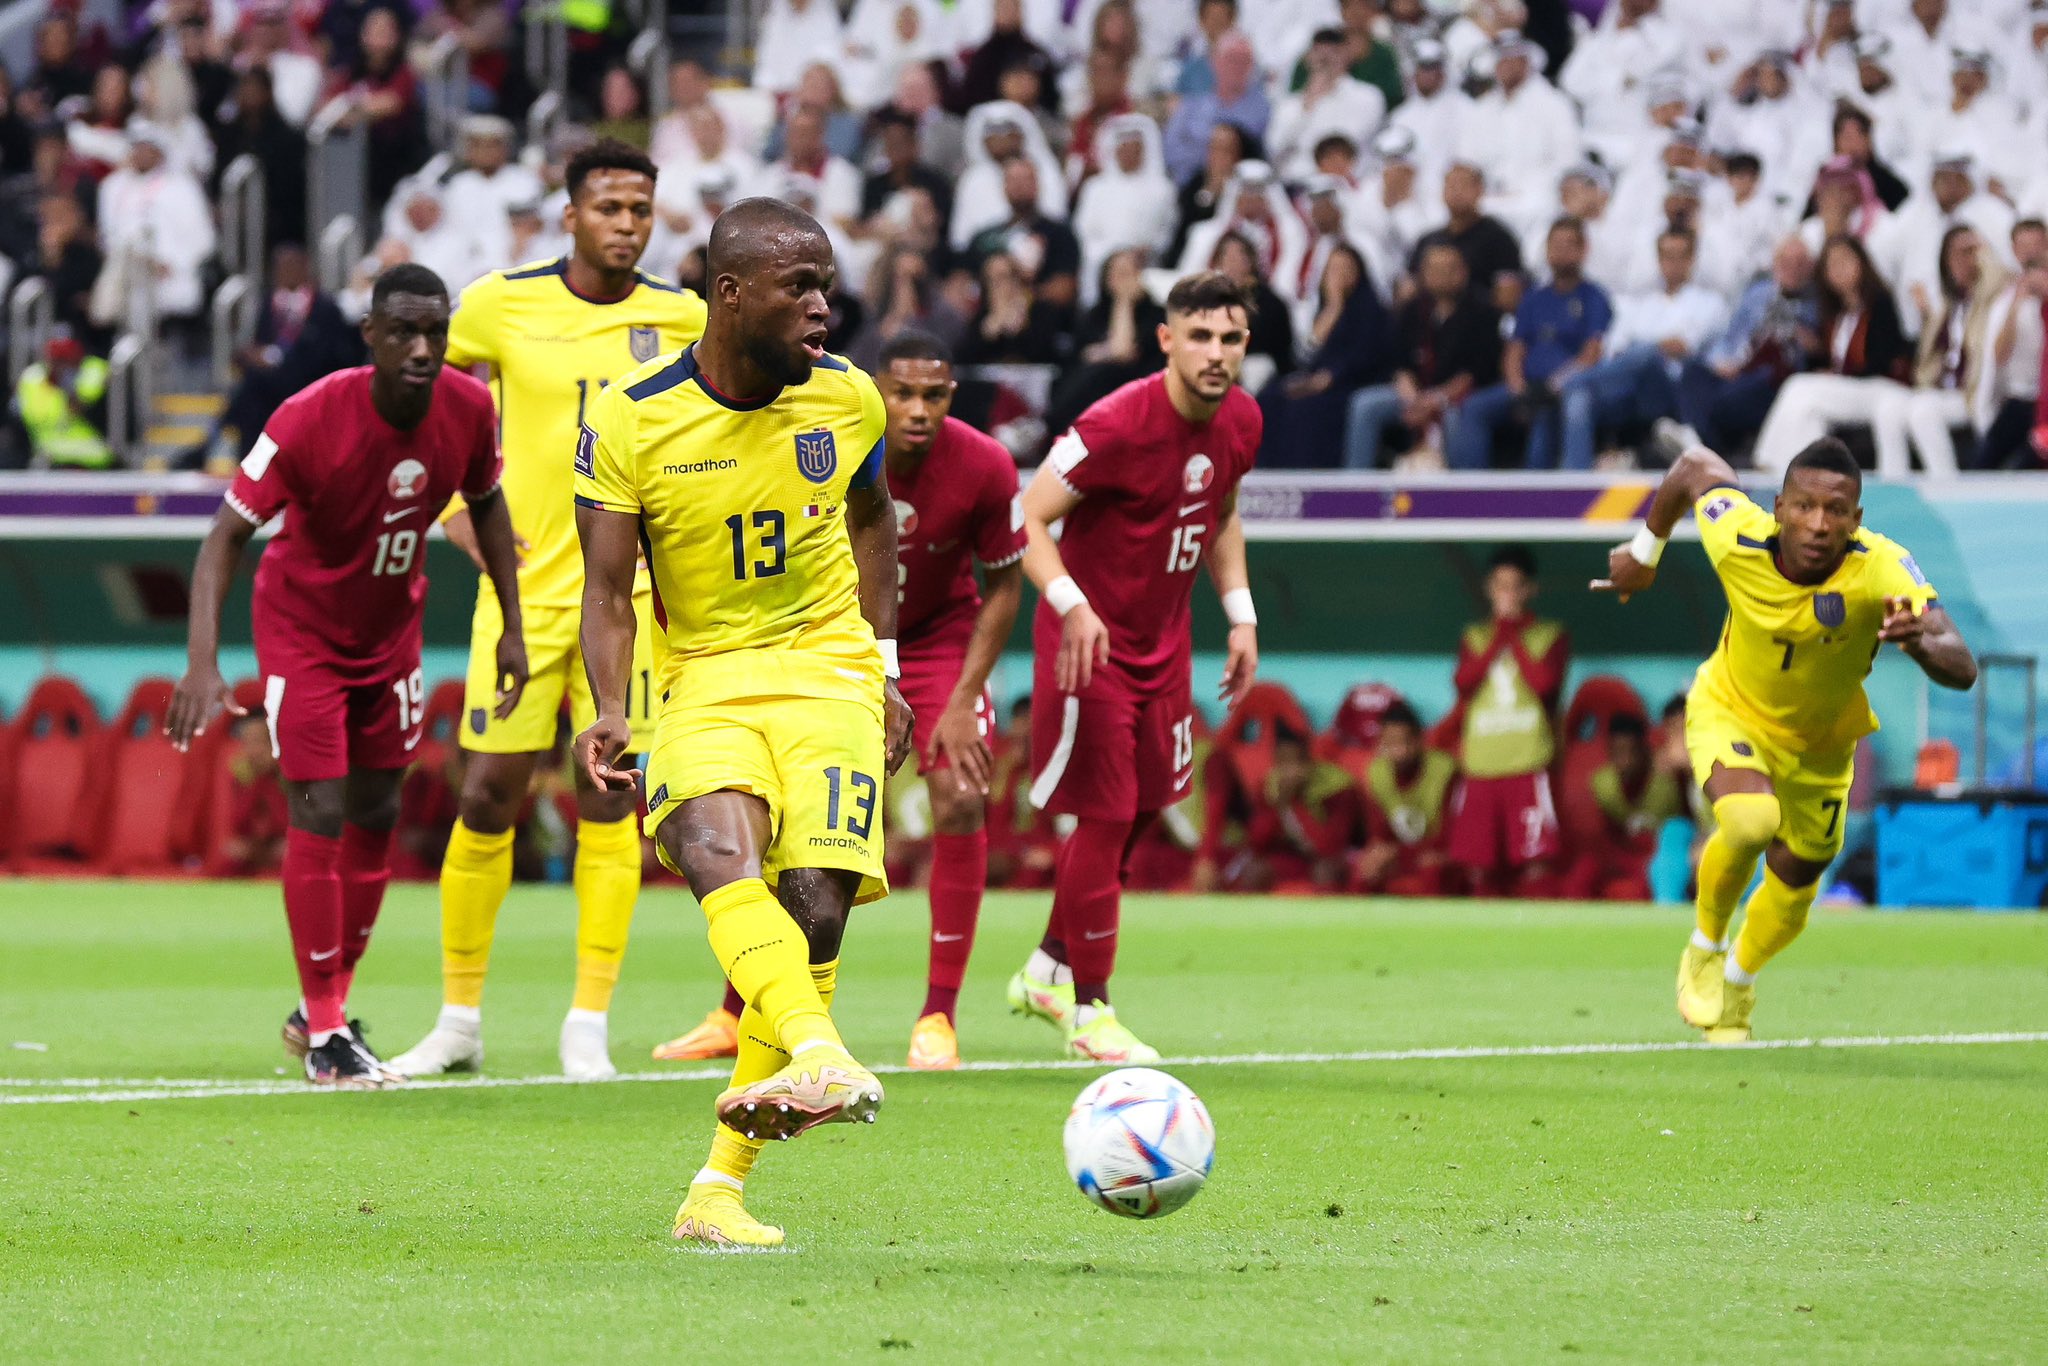 La selección ecuatoriana venció a Qatar en el partido inaugural de la Copa del Mundo.  Imagen: @LaTri.